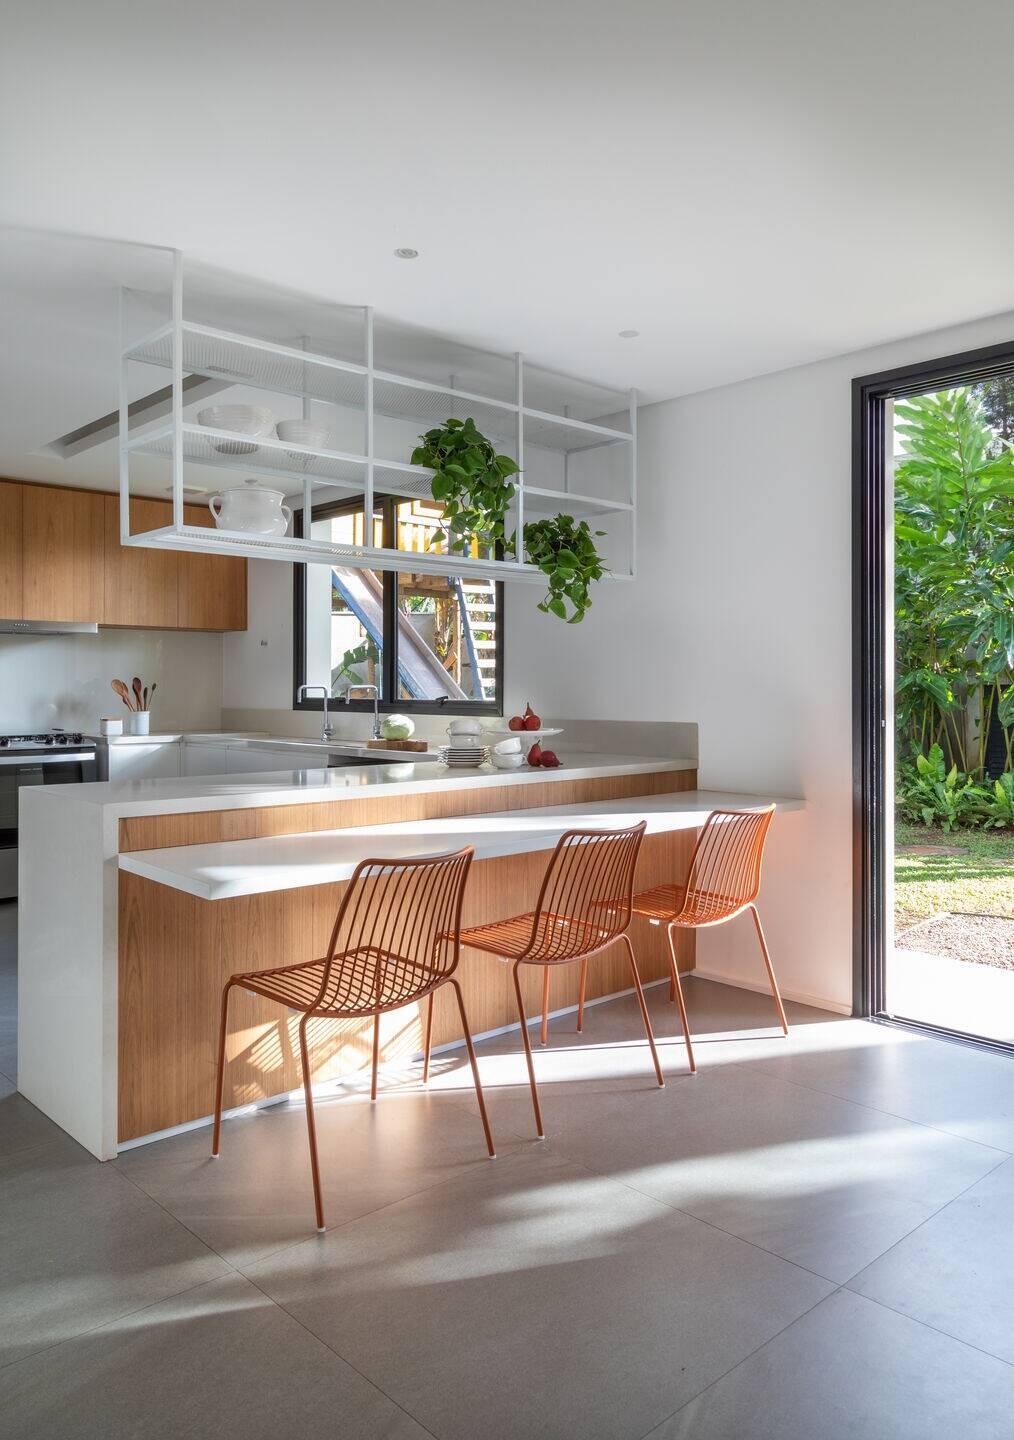 
Phòng bếp kết hợp với không gian ăn sáng và ăn trưa với cửa trượt mở thông ra ngoài vườn để đón sang và đón gió
